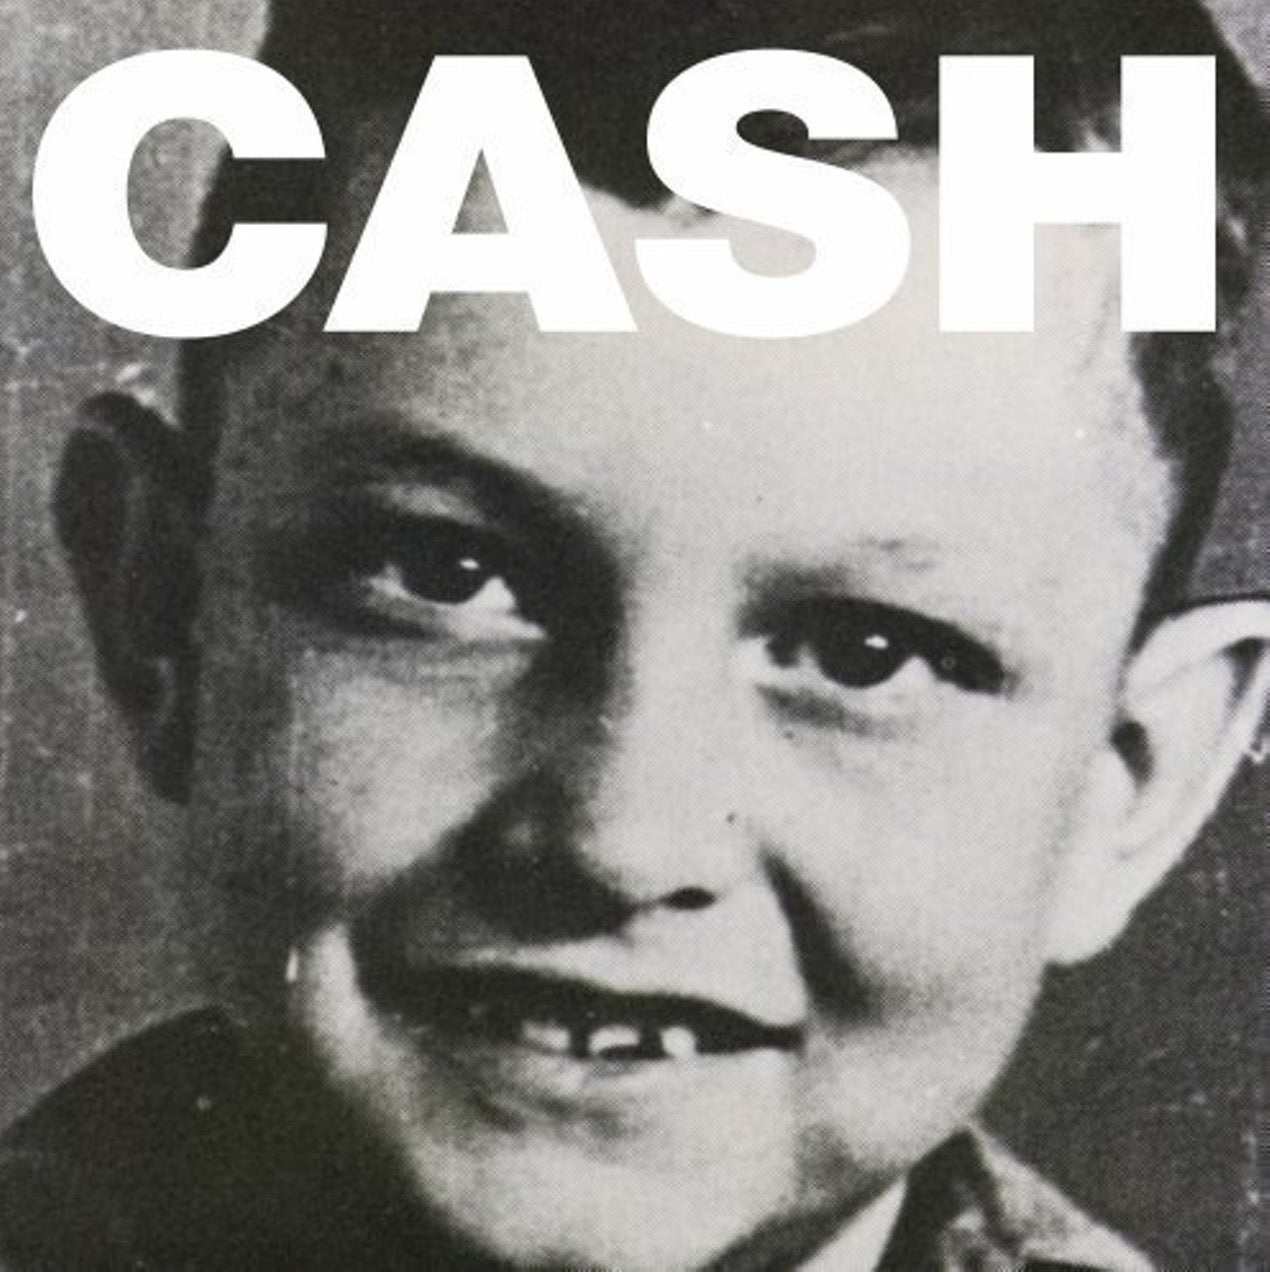 Johnny Cash - American VI: Ain’t No Grave